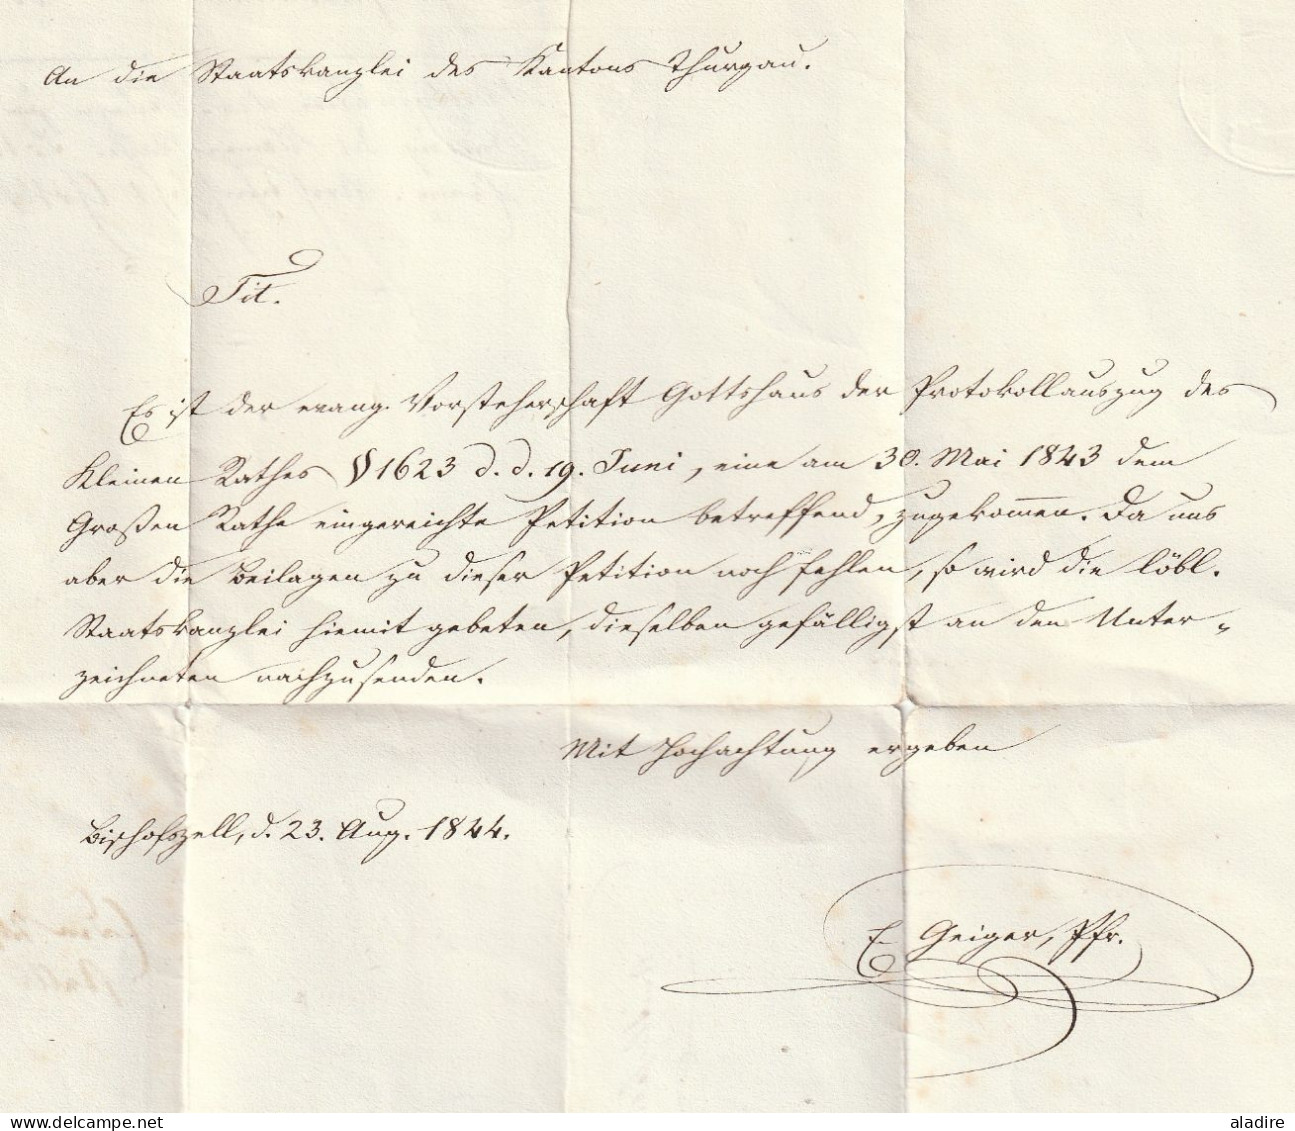 1844 - Lettre pliée de BISCHOFEZELL, Bishopfzell, Thurgovie vers Frauenfeld - cachet à date d'arrivée